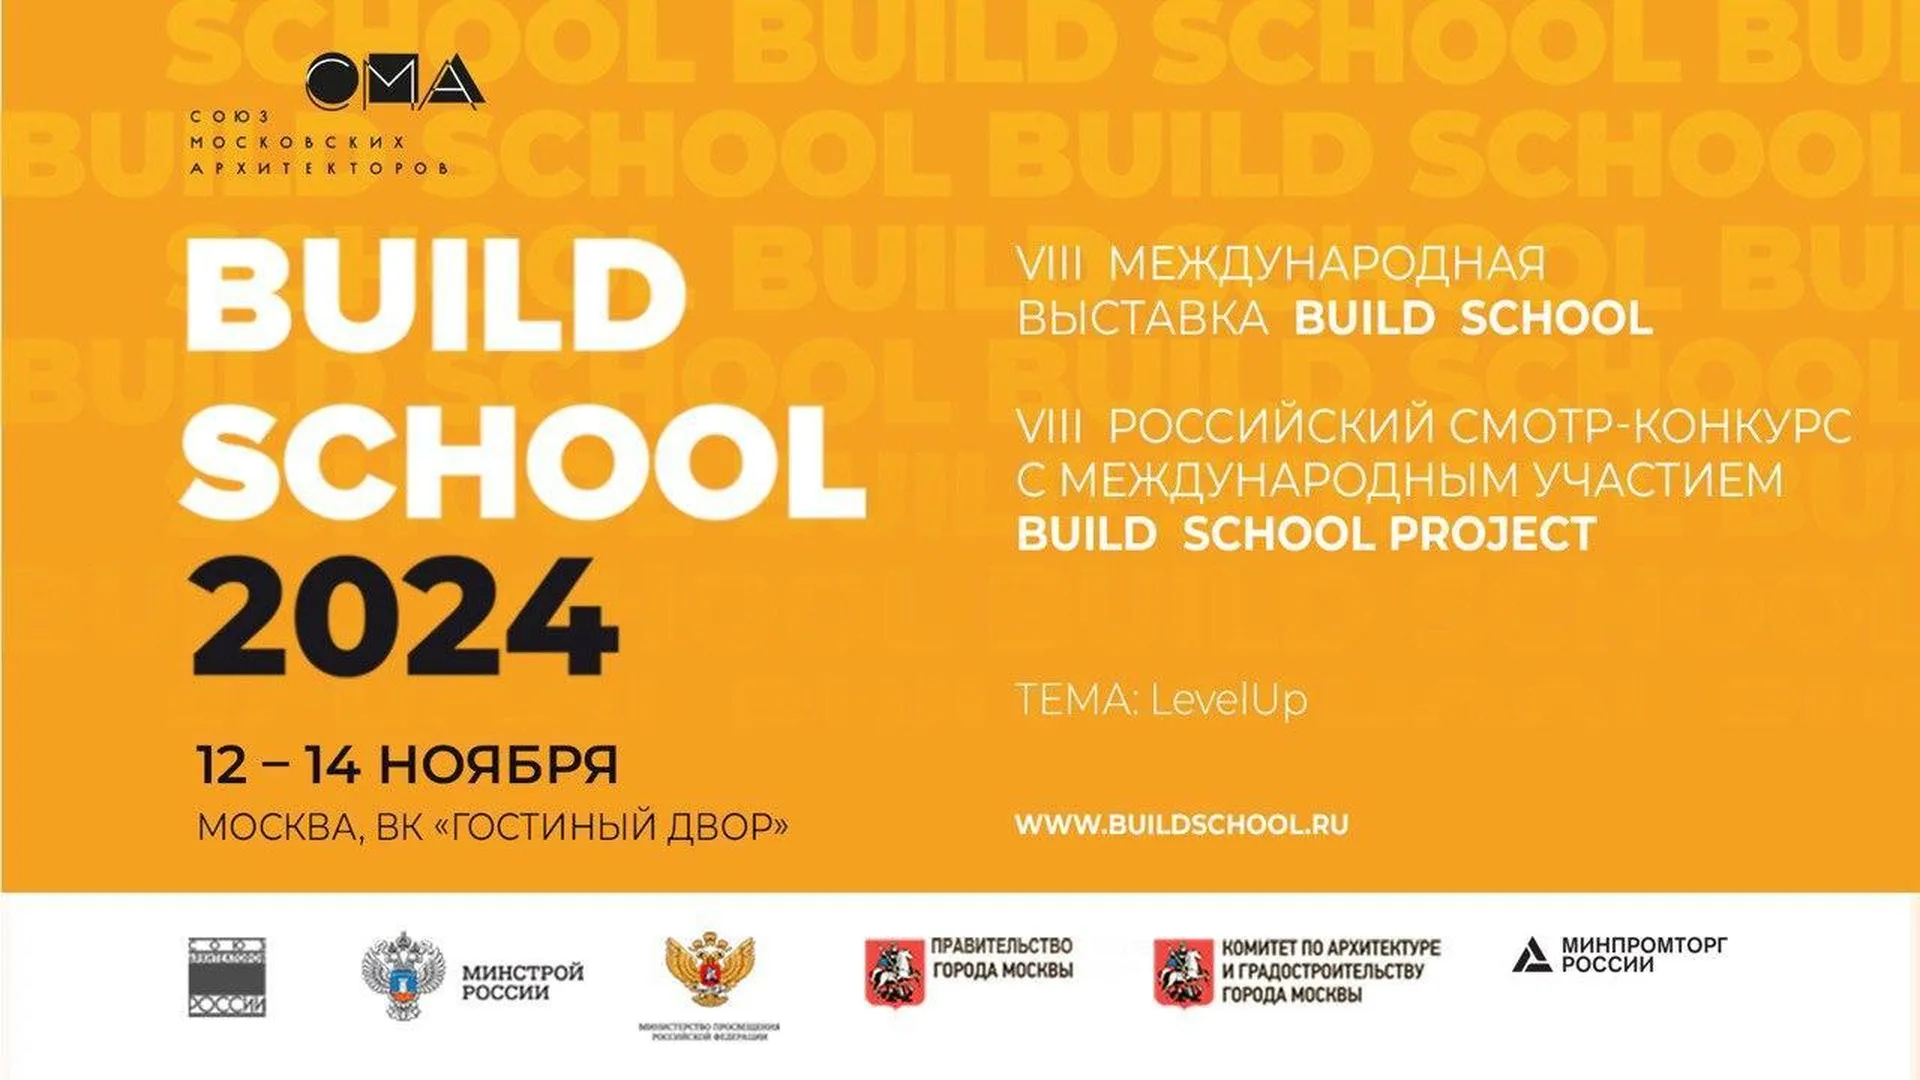 Международная выставка BUILD SCHOOL 2024 пройдет в Москве 12–14 ноября